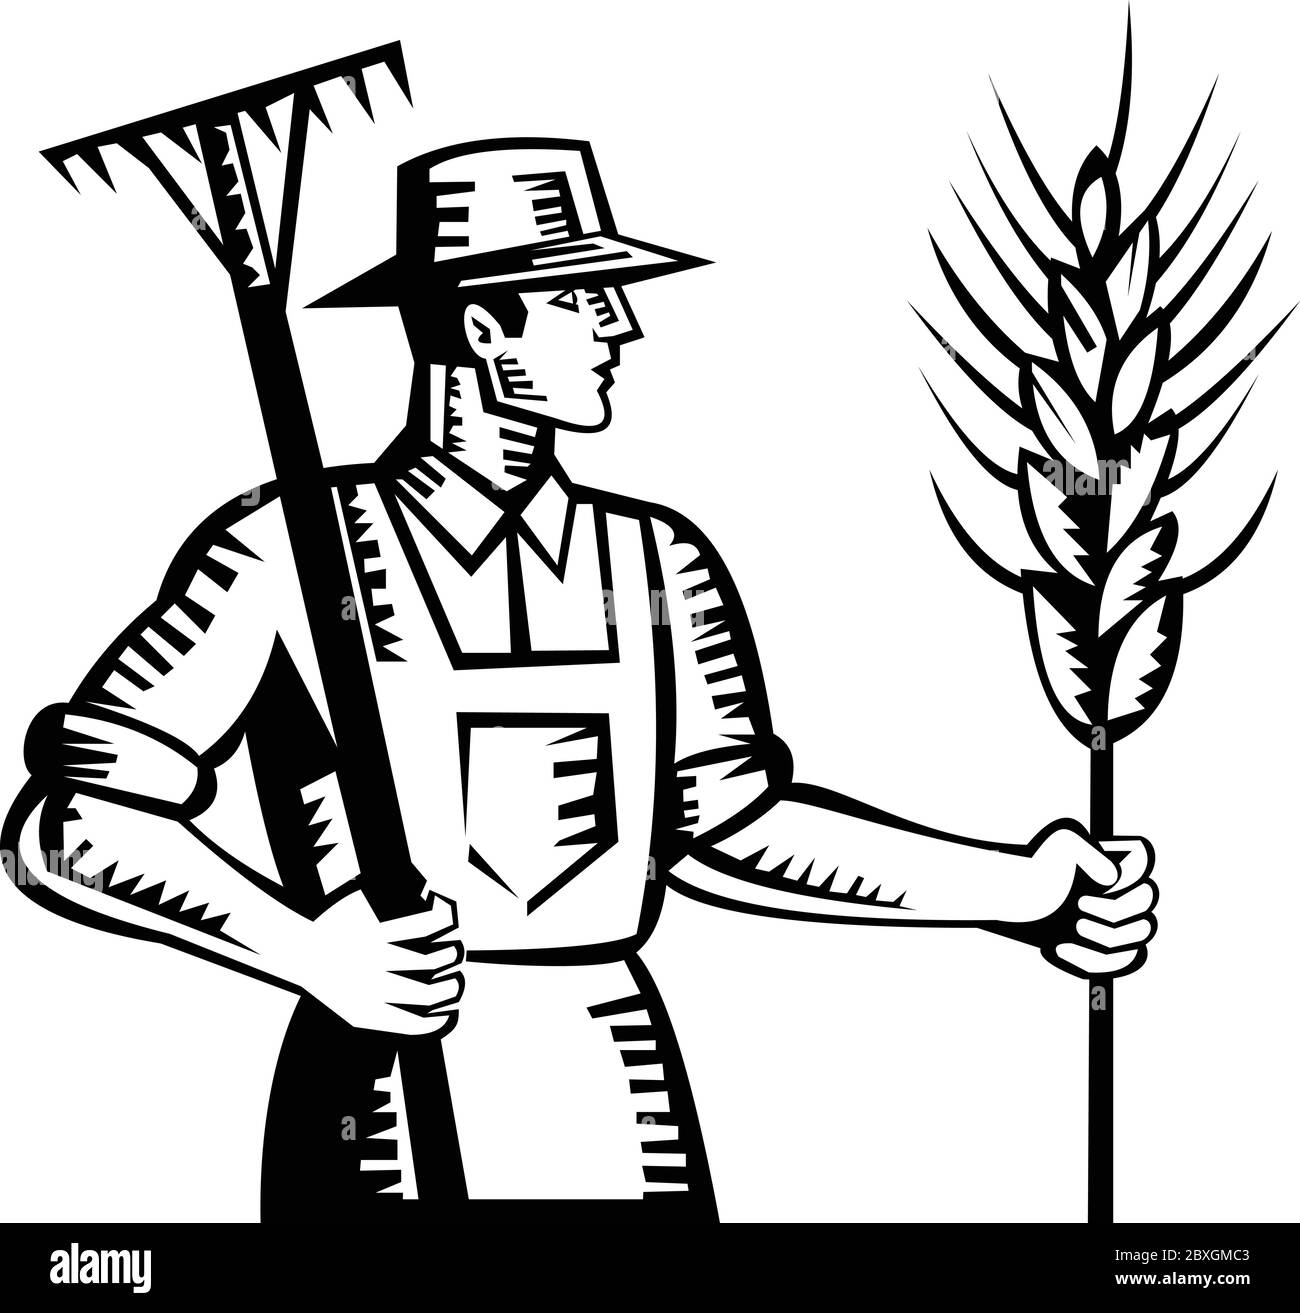 Illustration eines Weizenbauern Arbeiter mit einem Rechen und Getreide Kornstiel von der Seite im Retro-Holzschnitt-Stil gemacht gesehen. Stock Vektor